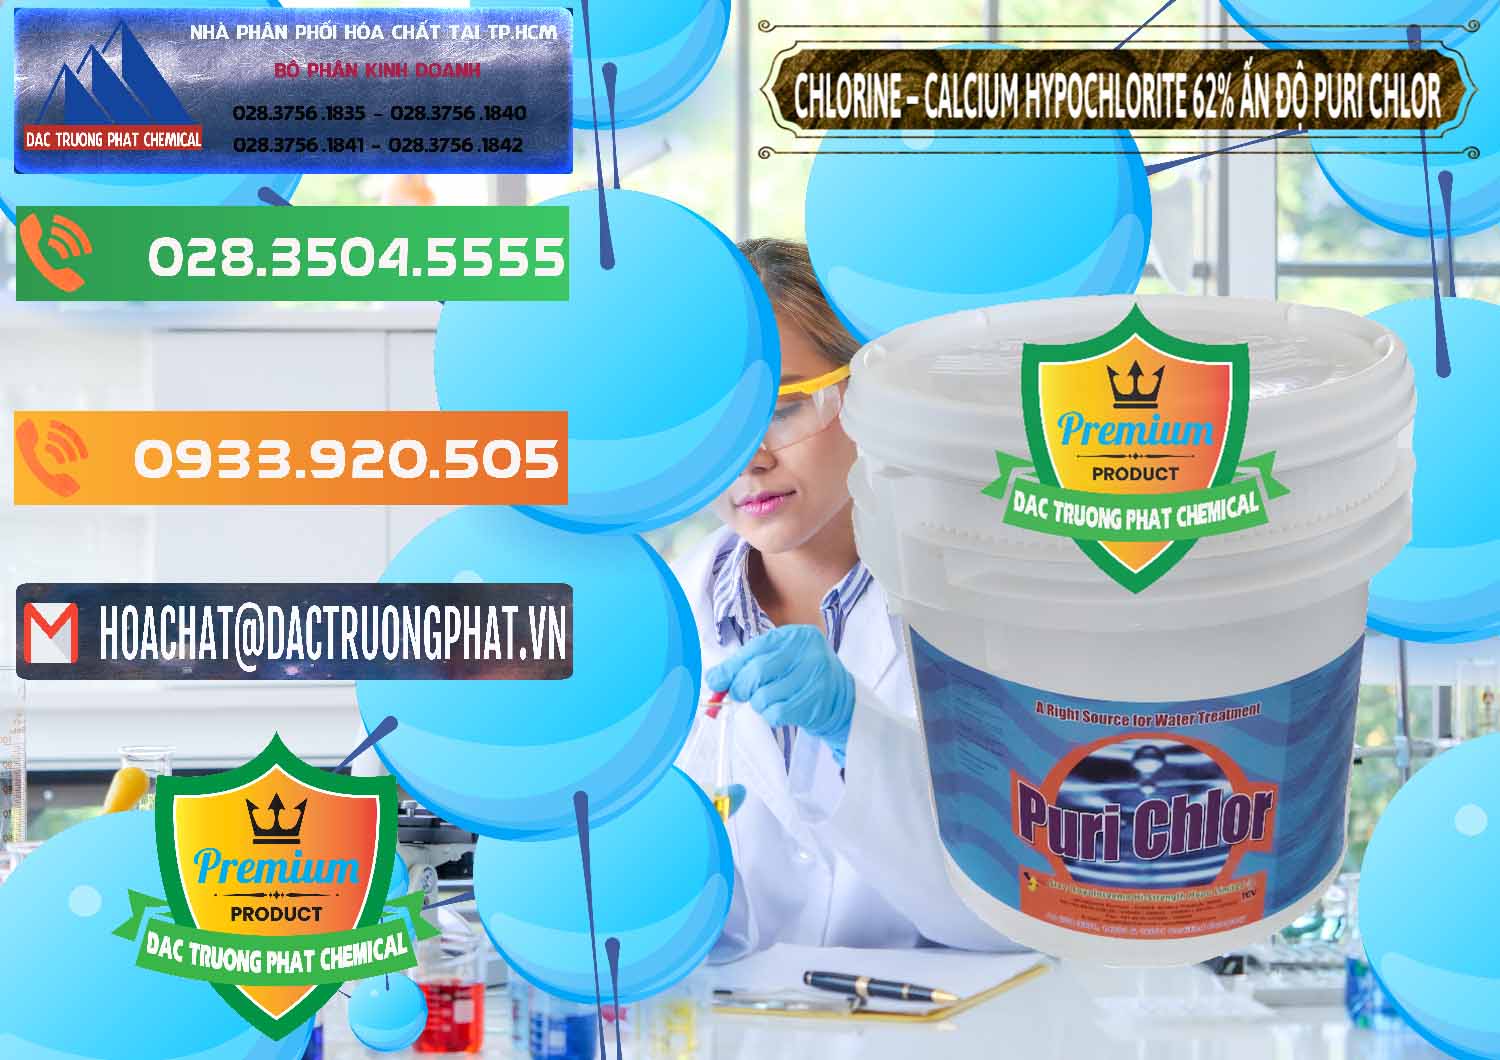 Cty nhập khẩu & bán Chlorine – Clorin 62% Puri Chlo Ấn Độ India - 0052 - Cung ứng _ phân phối hóa chất tại TP.HCM - hoachatxulynuoc.com.vn